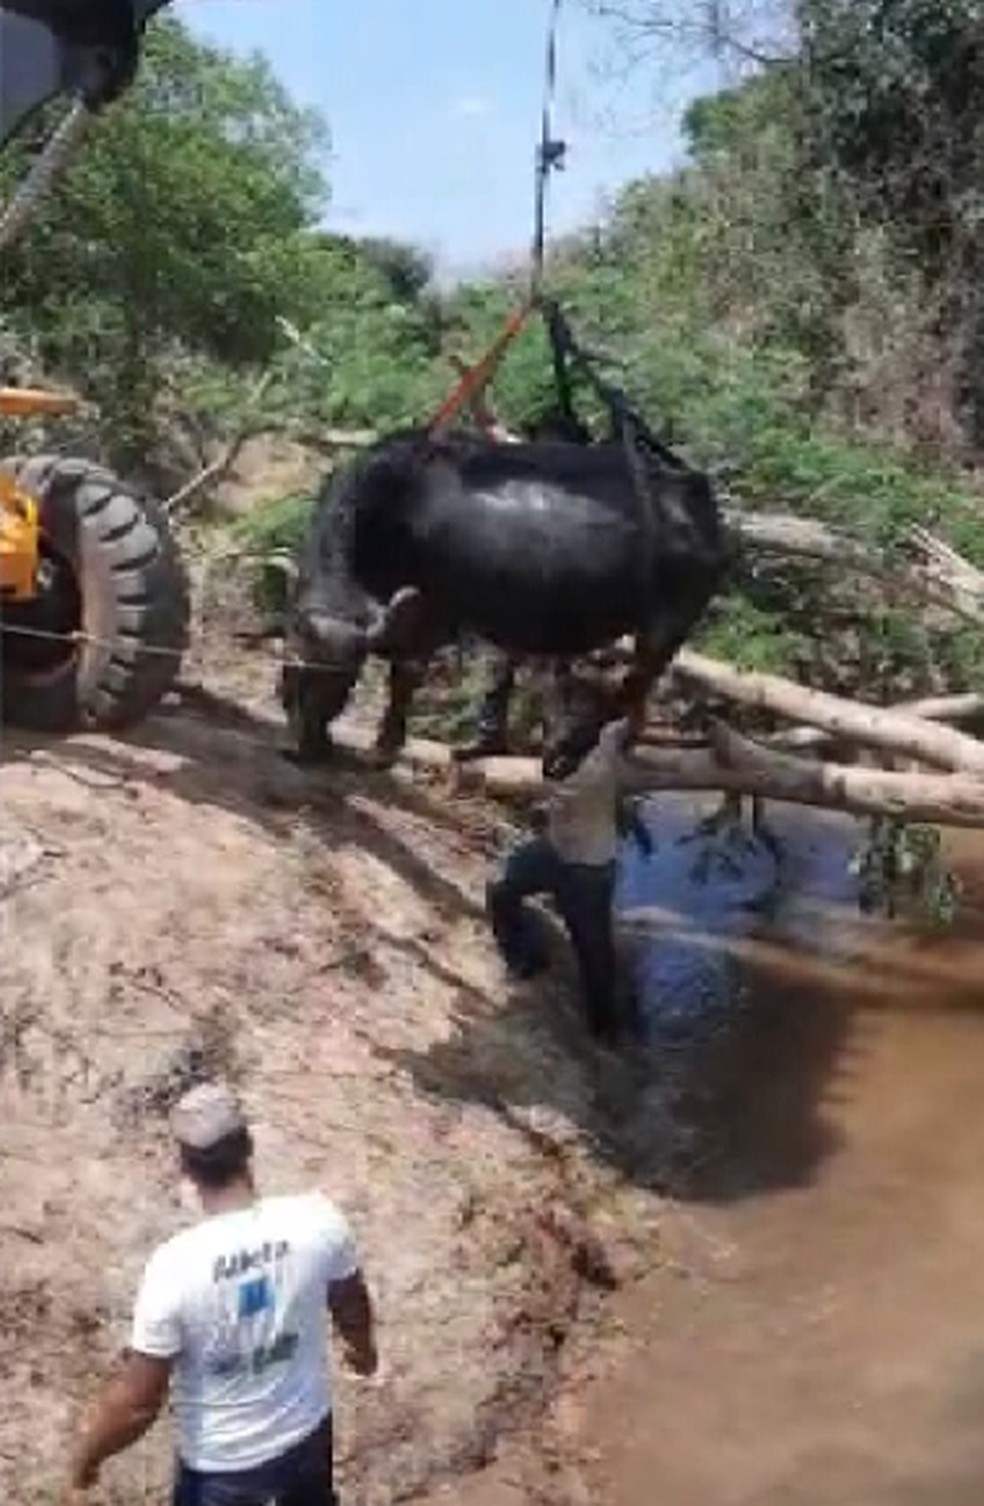 Búfalos que estavam atolados na lama em Brotas precisaram ser içados com ajuda de um retroescavadeira — Foto: Divulgação